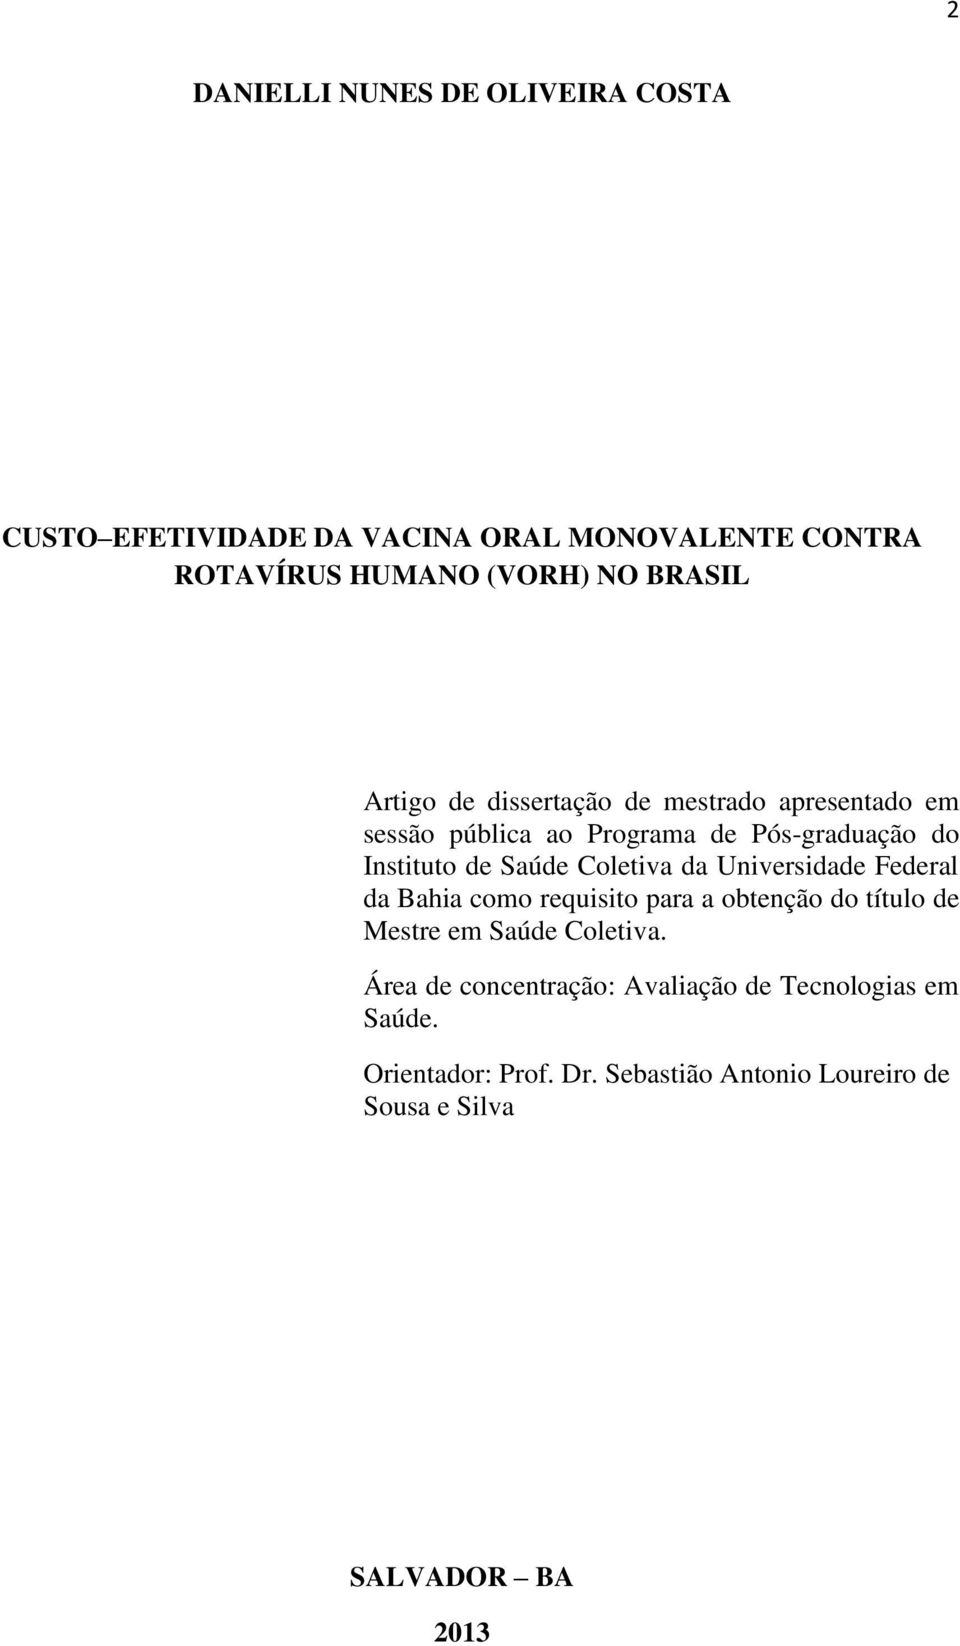 Coletiva da Universidade Federal da Bahia como requisito para a obtenção do título de Mestre em Saúde Coletiva.